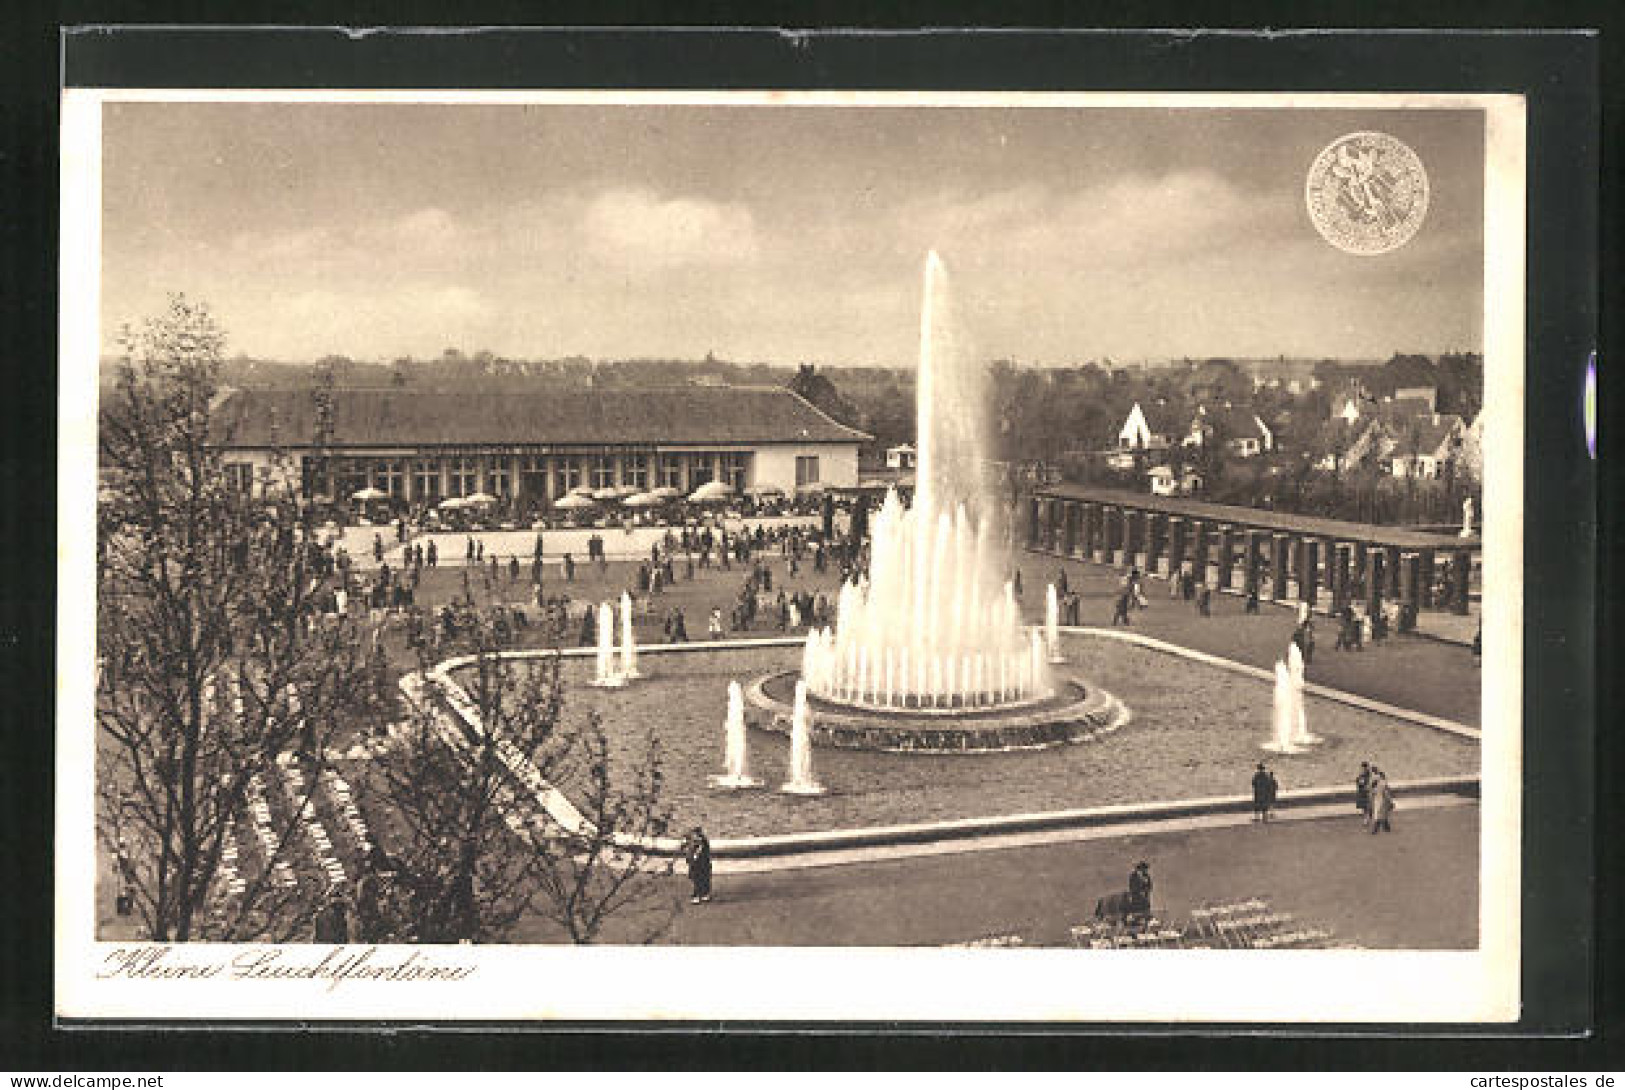 AK Düsseldorf, Grosse Reichsaustellung Schaffendes Volk 1937, Kleine Leuchtfontäne  - Expositions